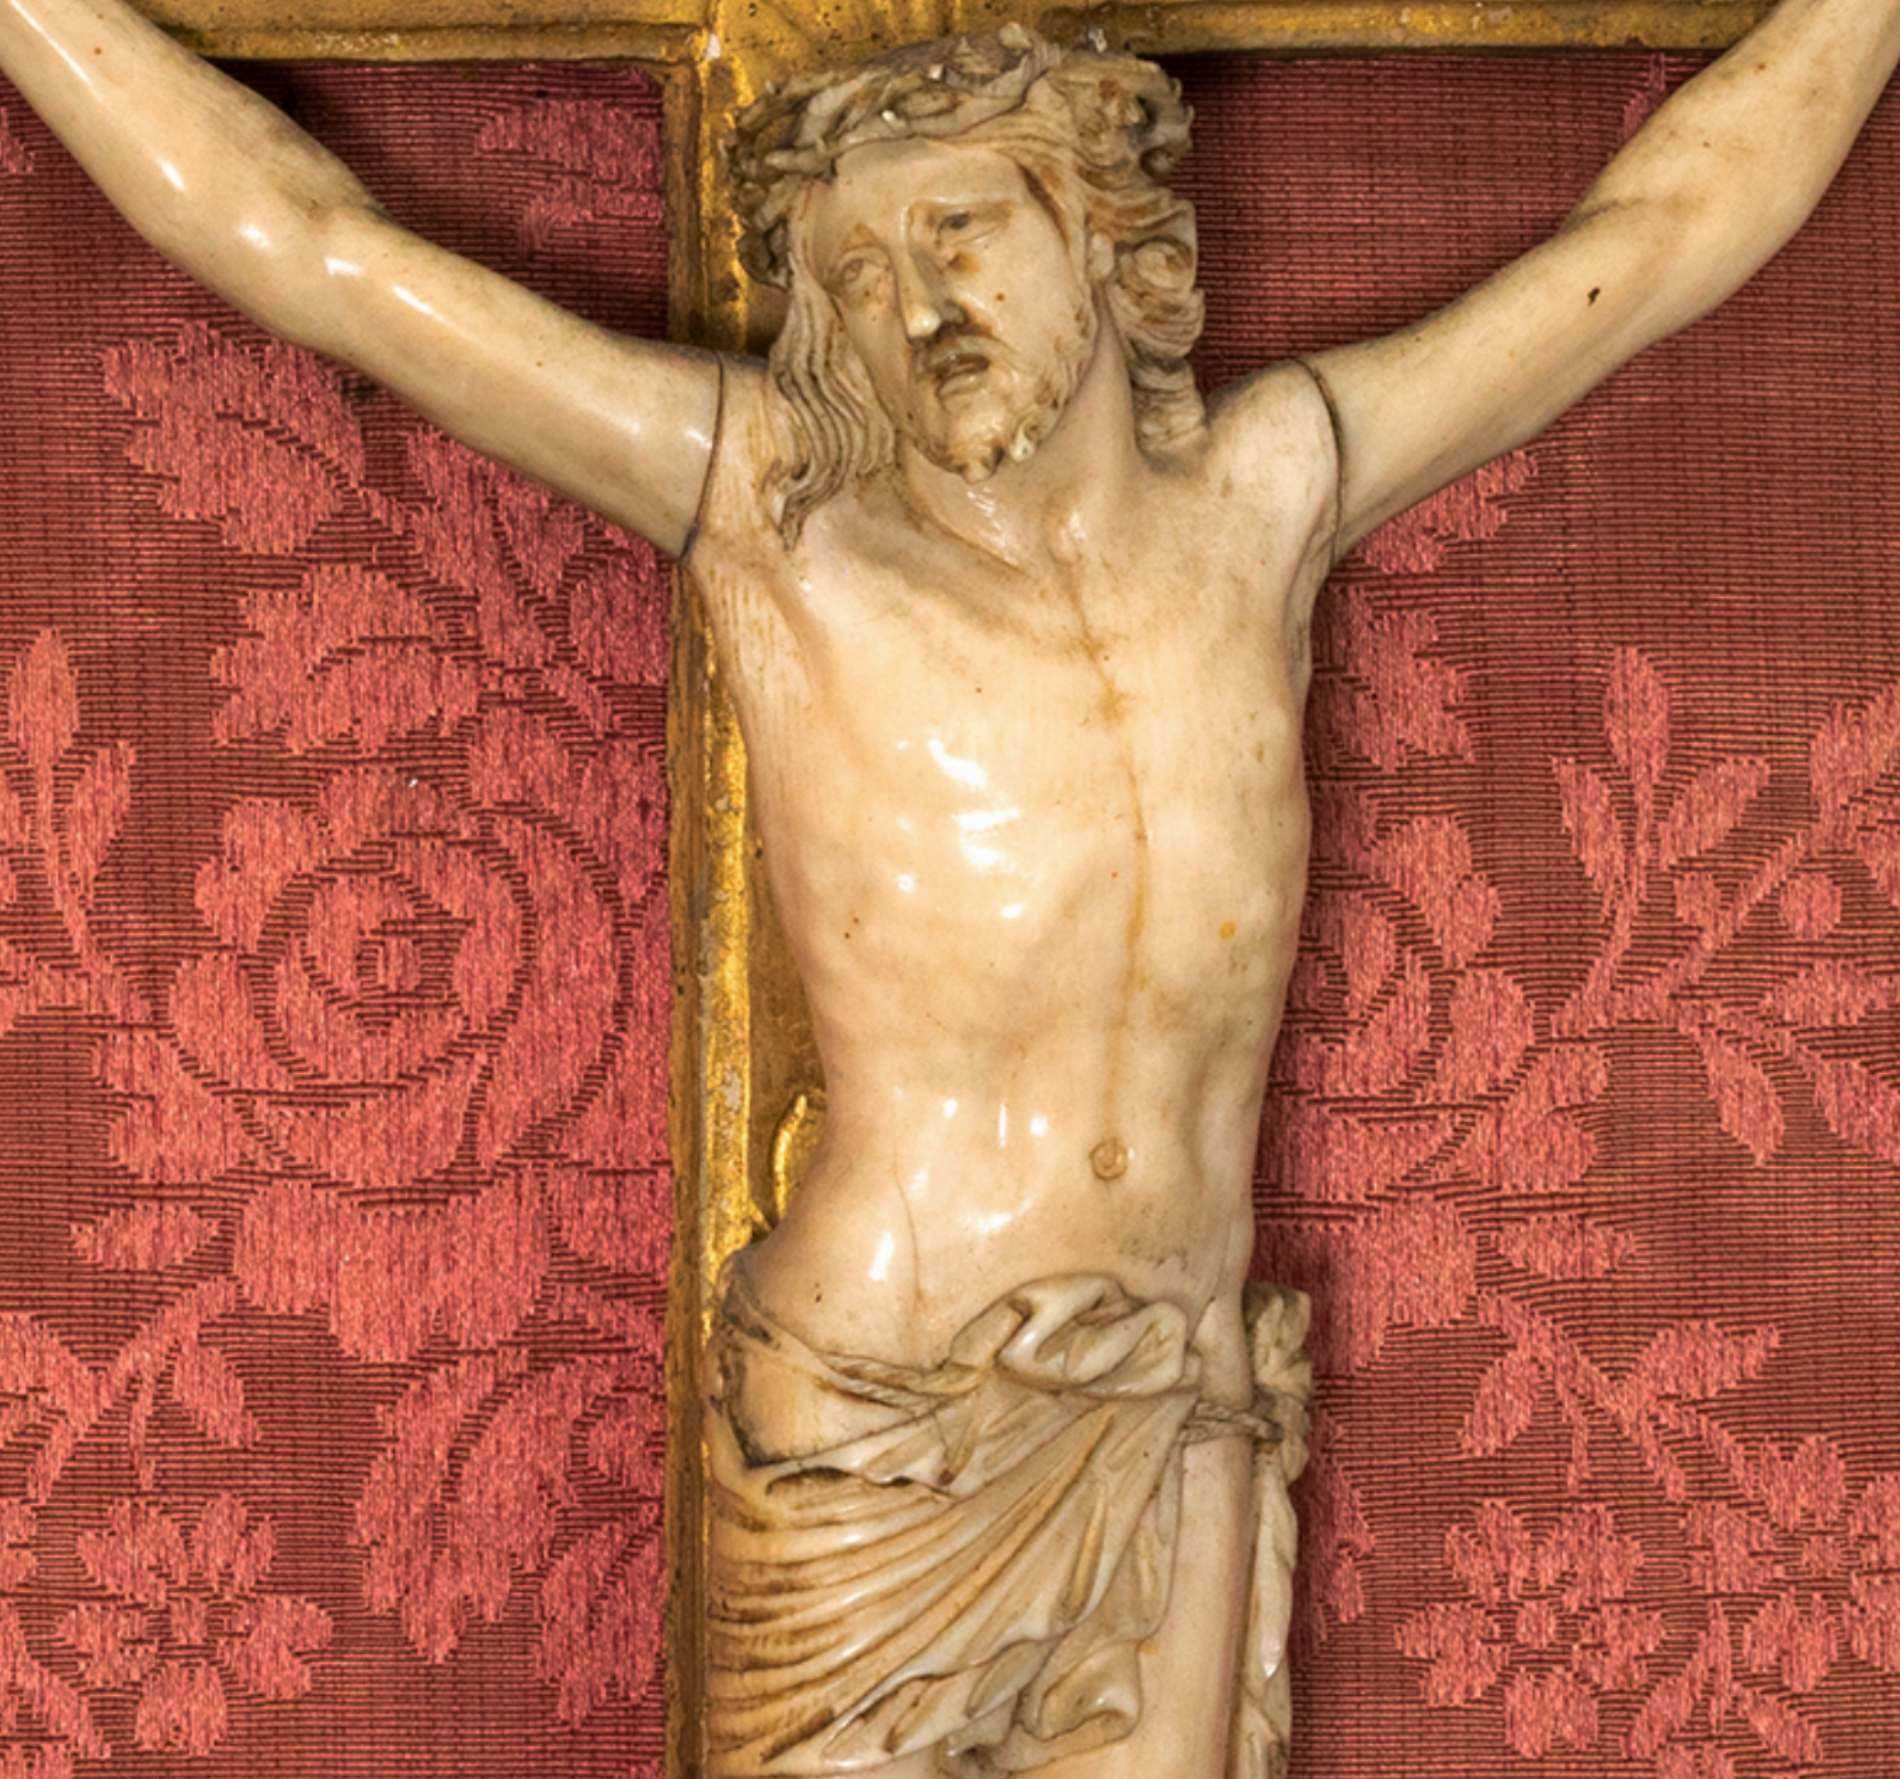 Escultura Jesus Cristo Arte sacra - século XVIII